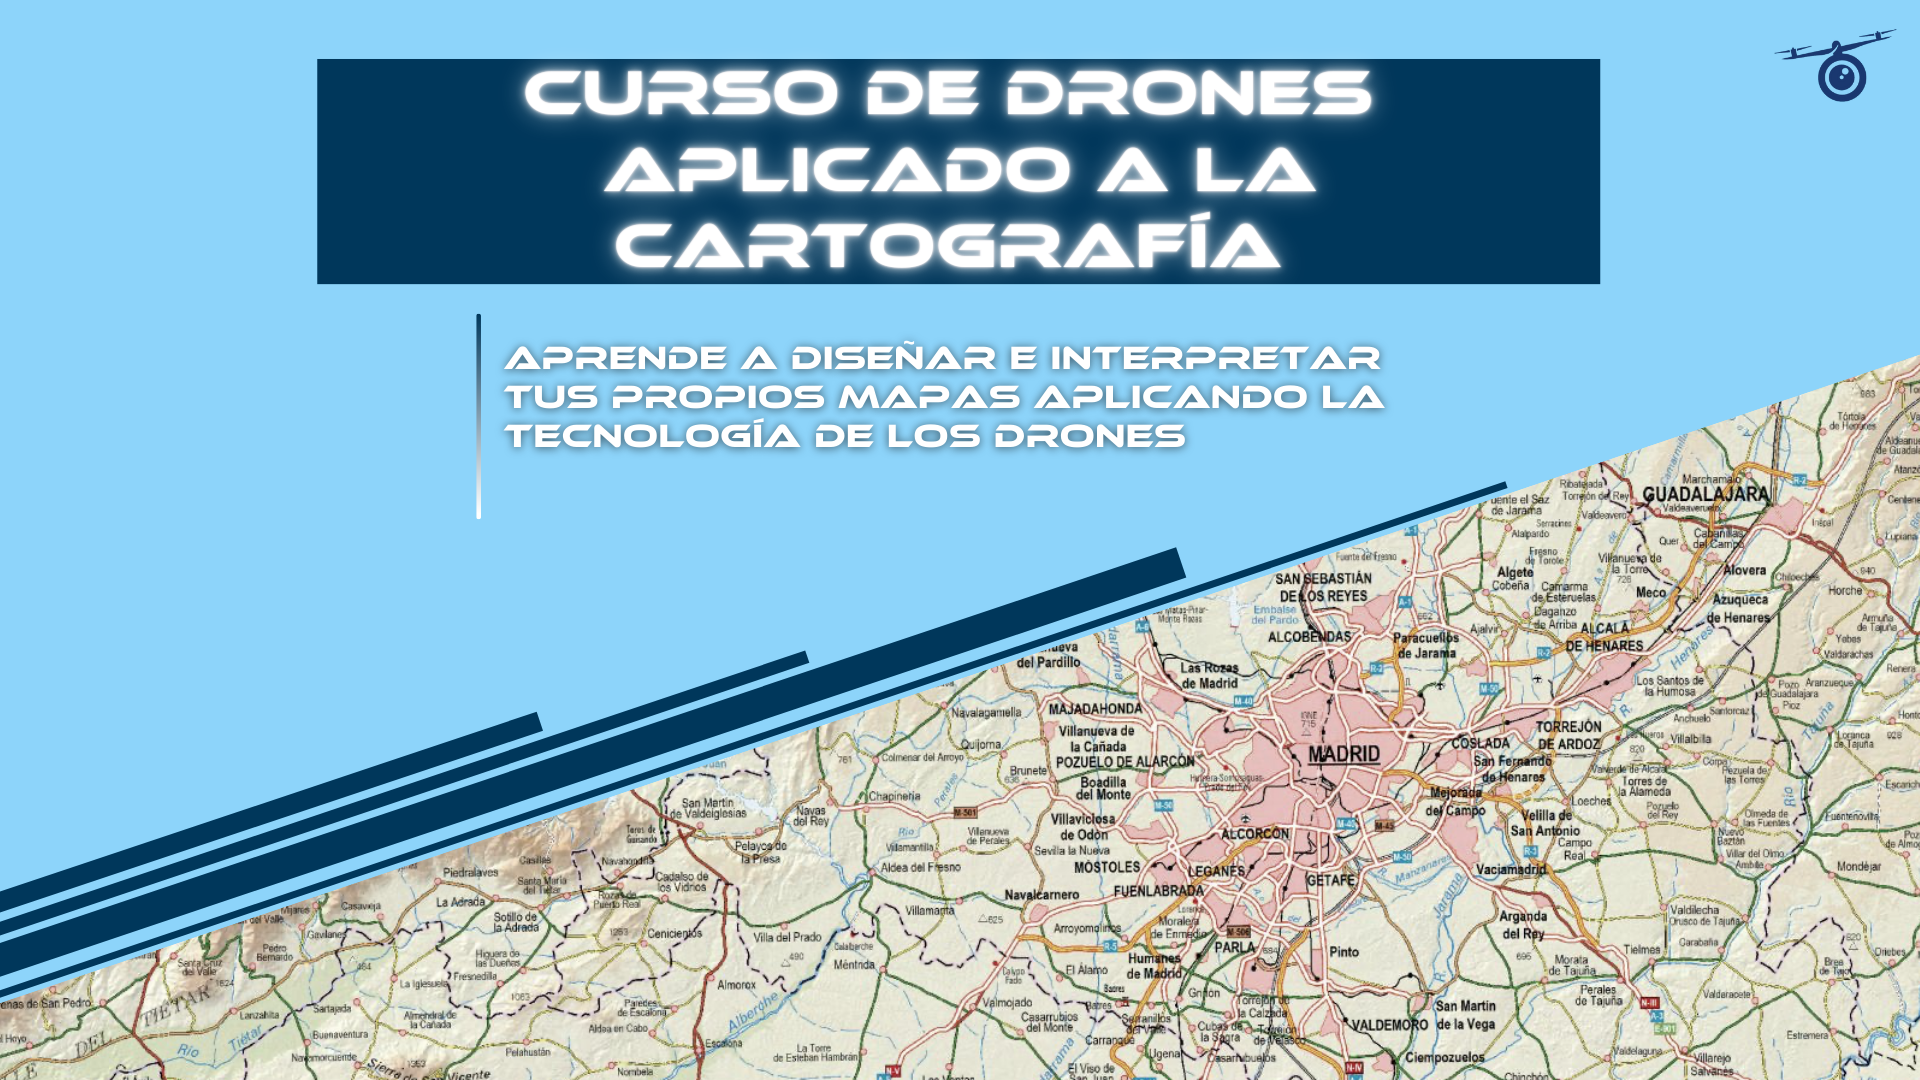 Curso de drones aplicado a la cartografía